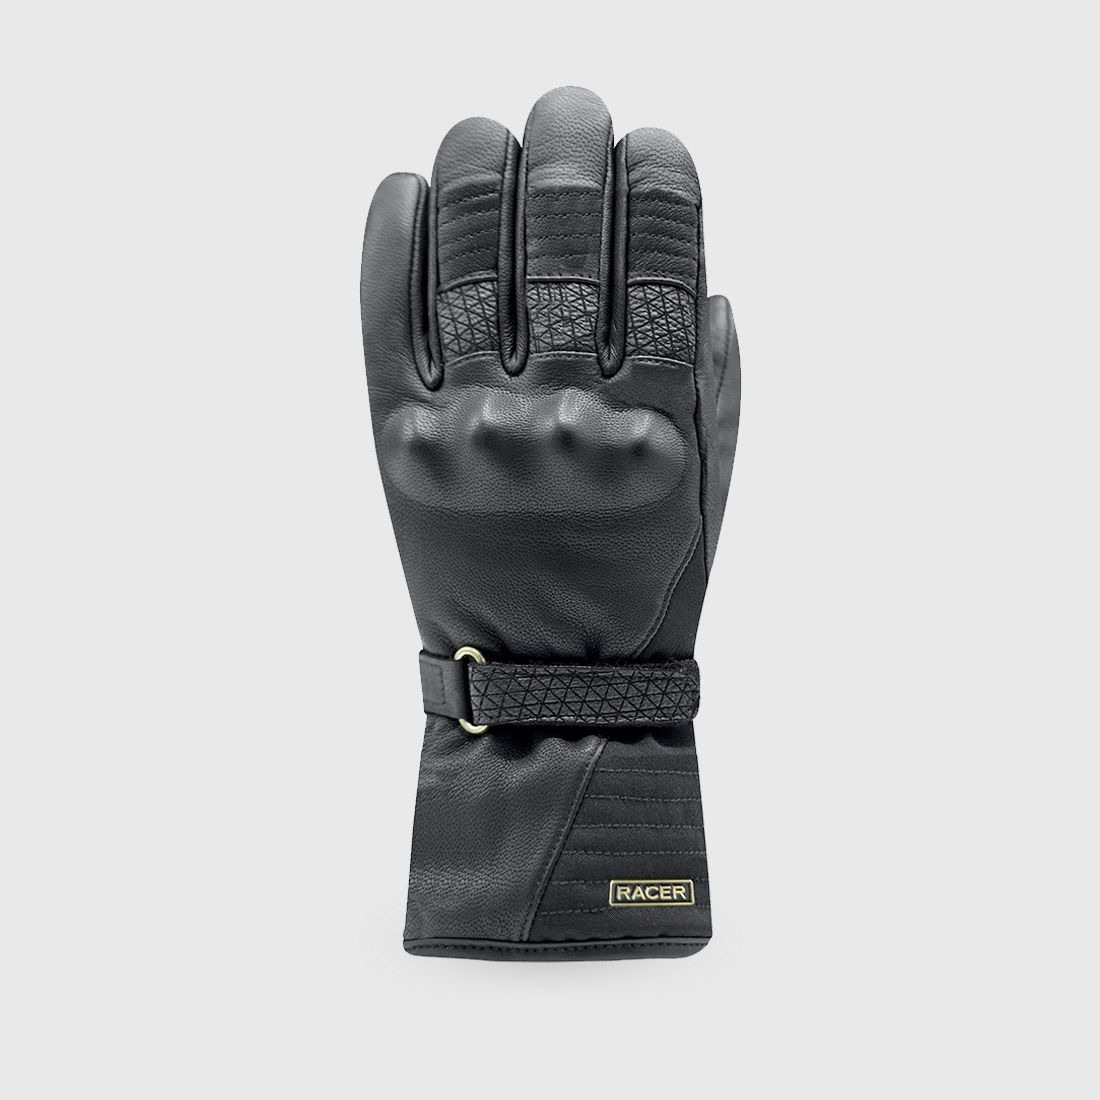 rukavice BELLA WINTER 3, RACER, dámské (černá)